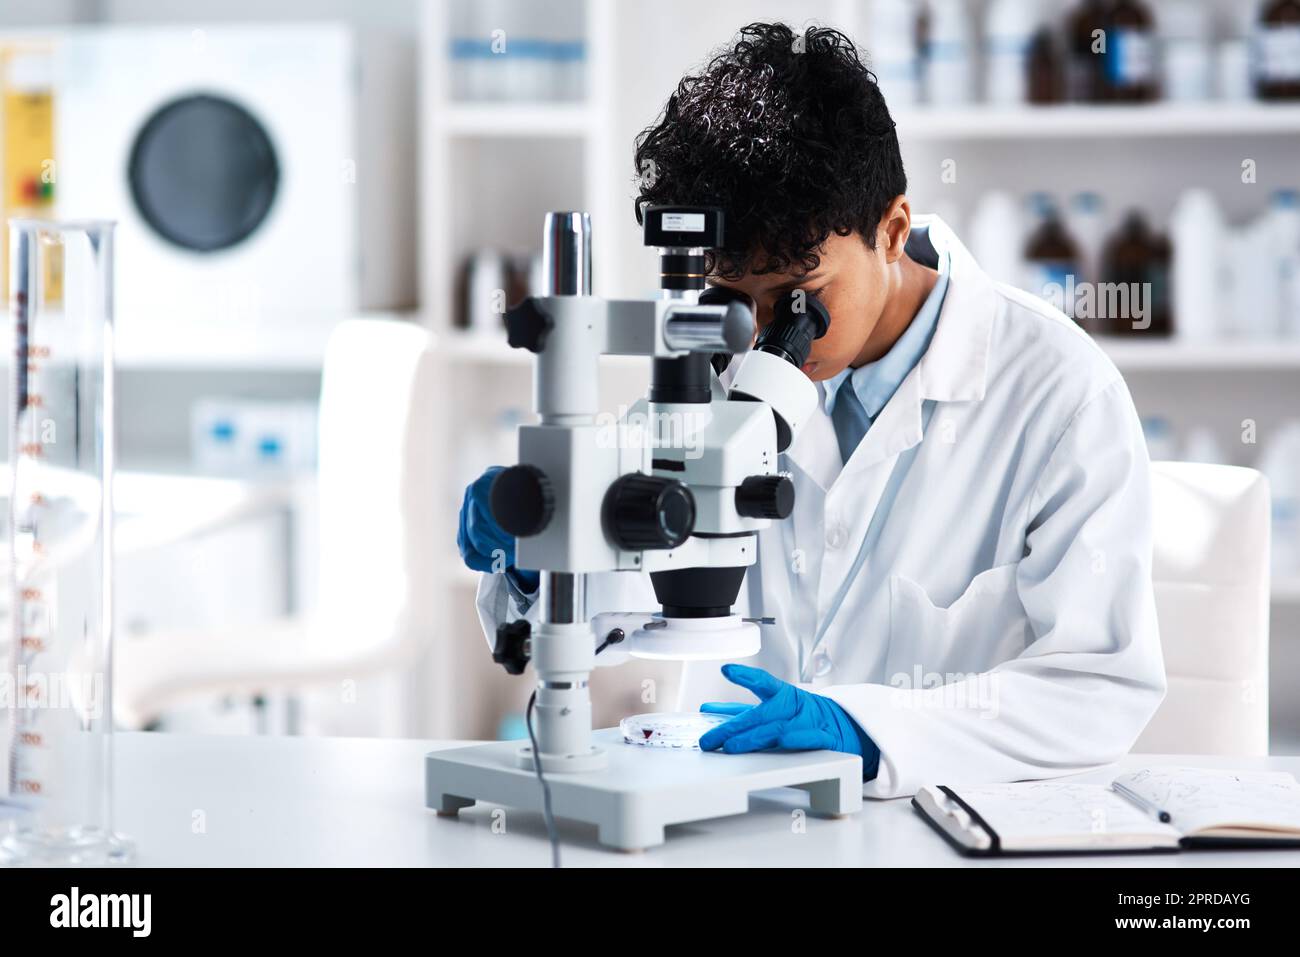 La science élargit les perspectives. Un jeune scientifique utilisant un microscope dans un laboratoire. Banque D'Images